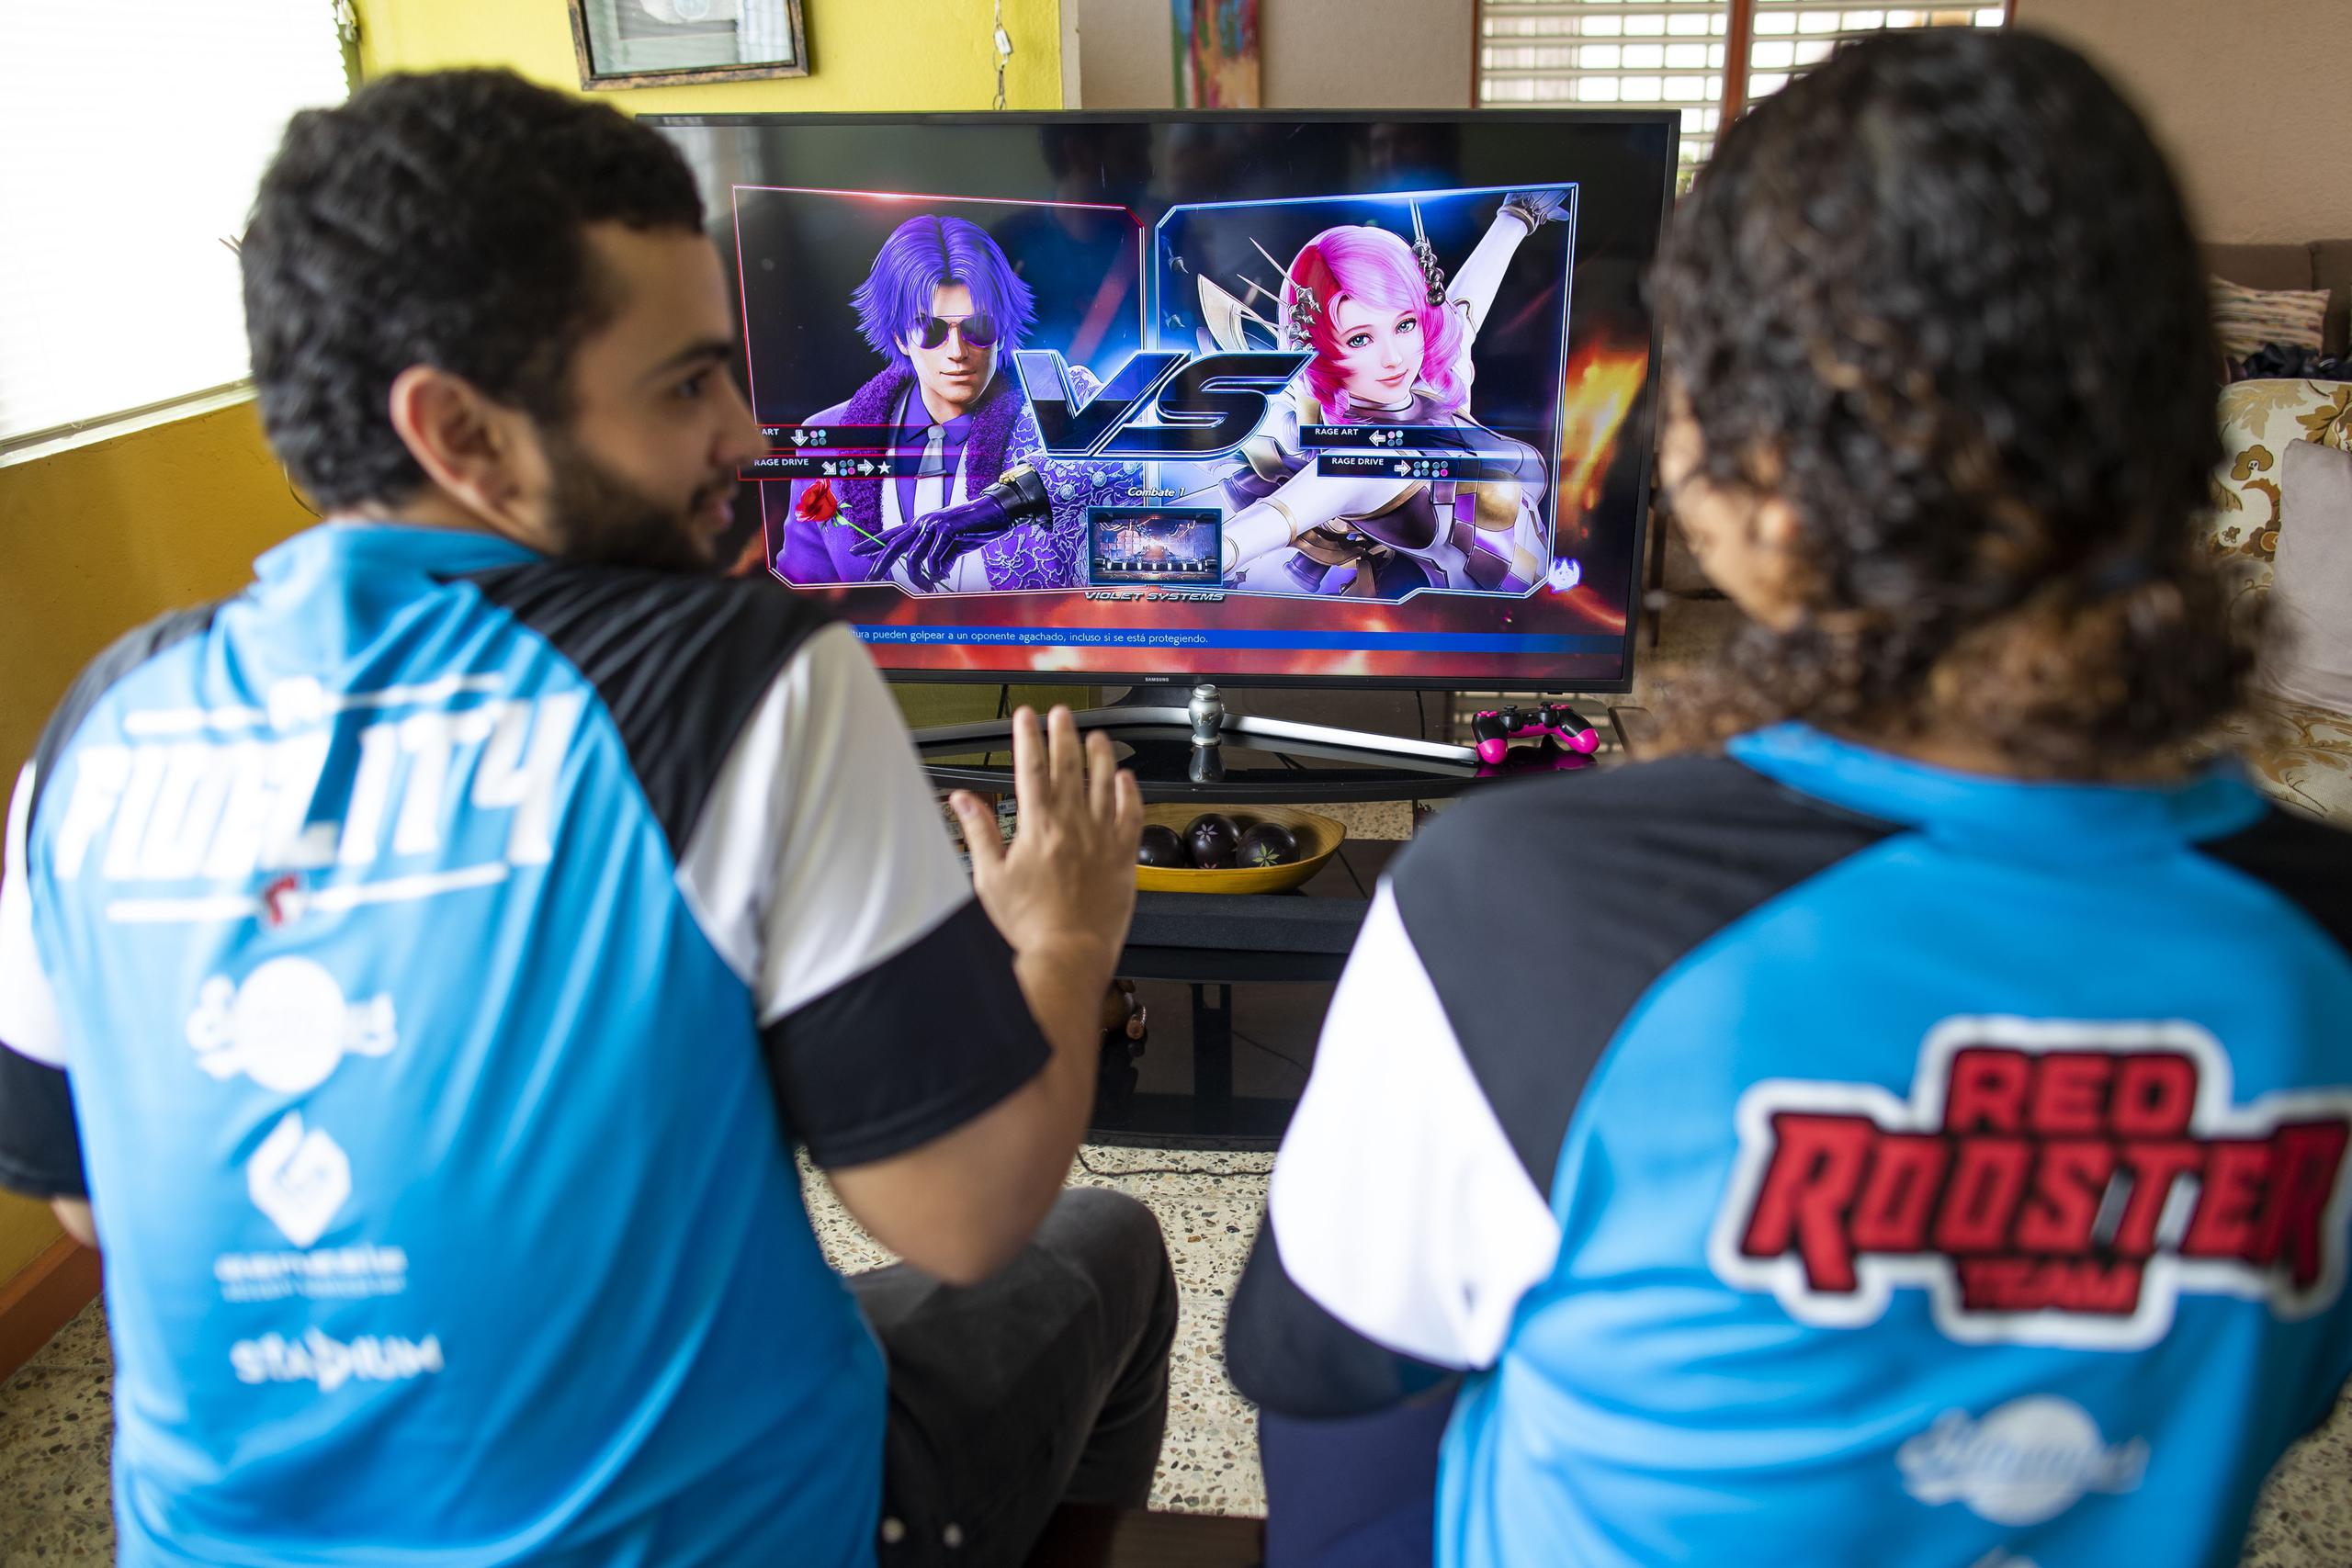 El equipo de eSports Red Roosters ha tocado puertas en el movimiento olímpico y ha representado a Puerto Rico en eventos internacionales.